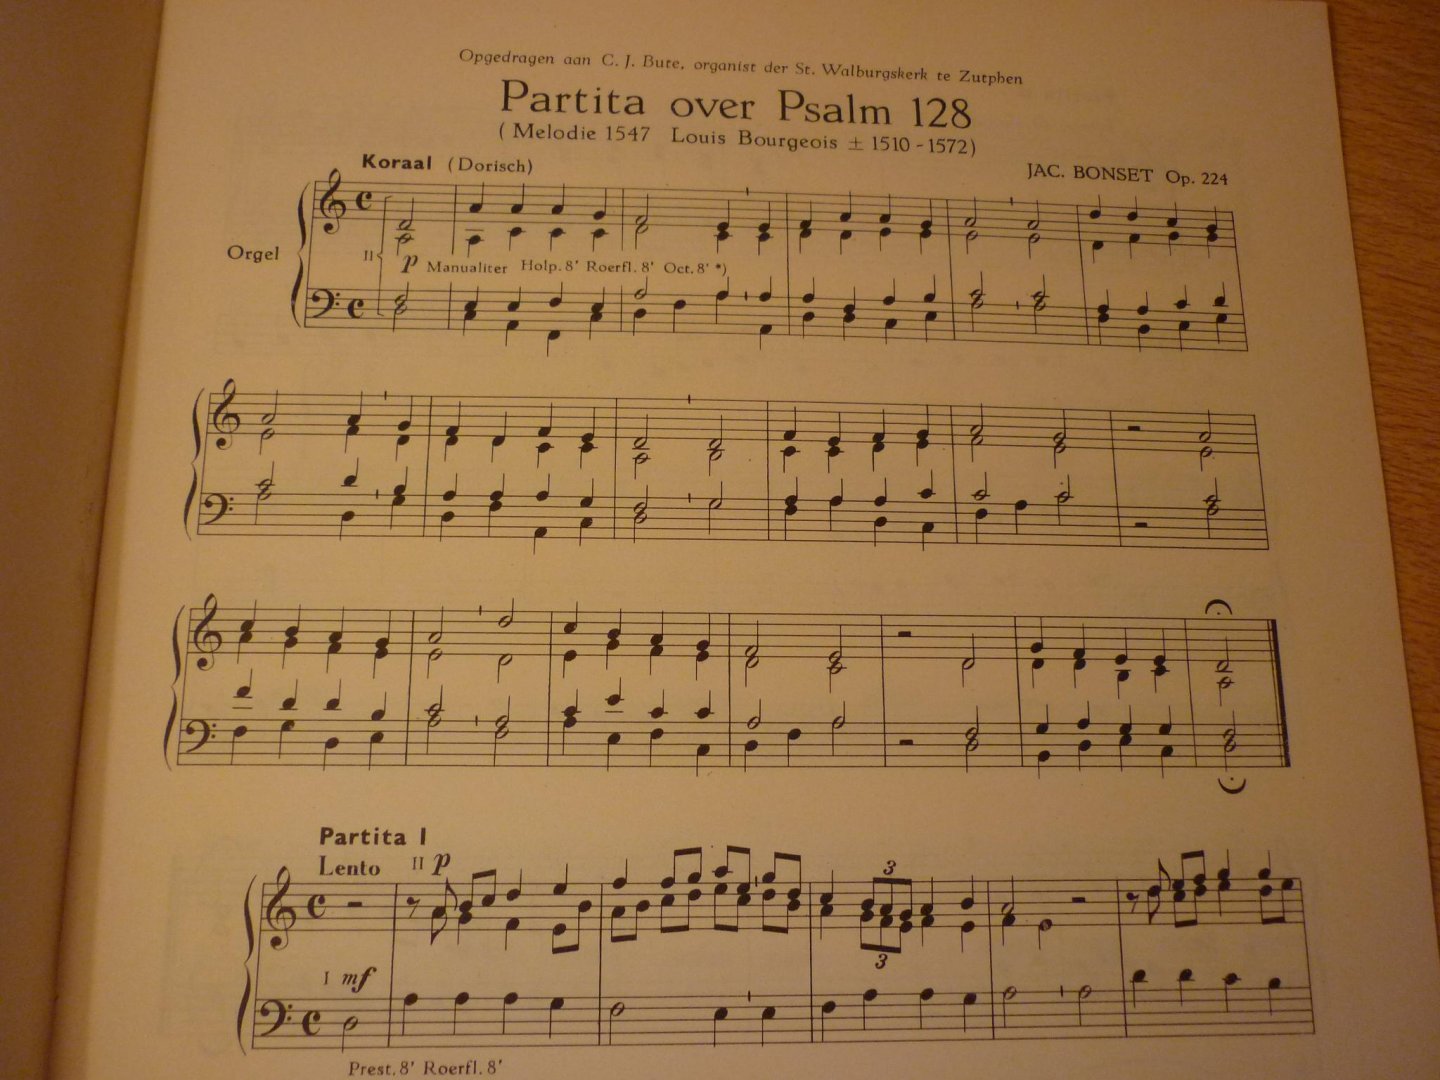 Bonset; Jac. - Partita over Psalm 128; Voor orgel; Opus 224